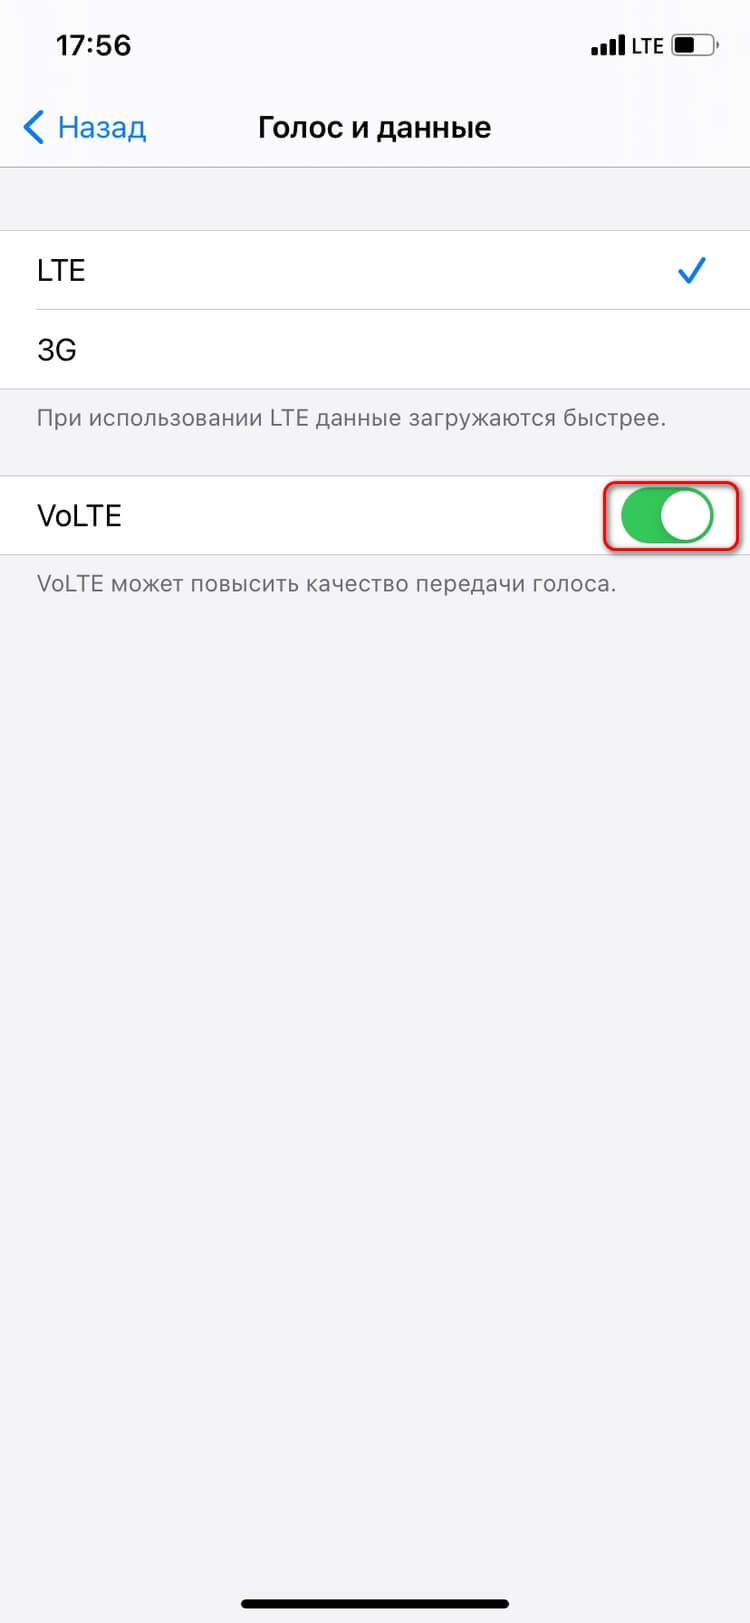 Звонки VolTE в сети МТС: как подключить, сколько стоит